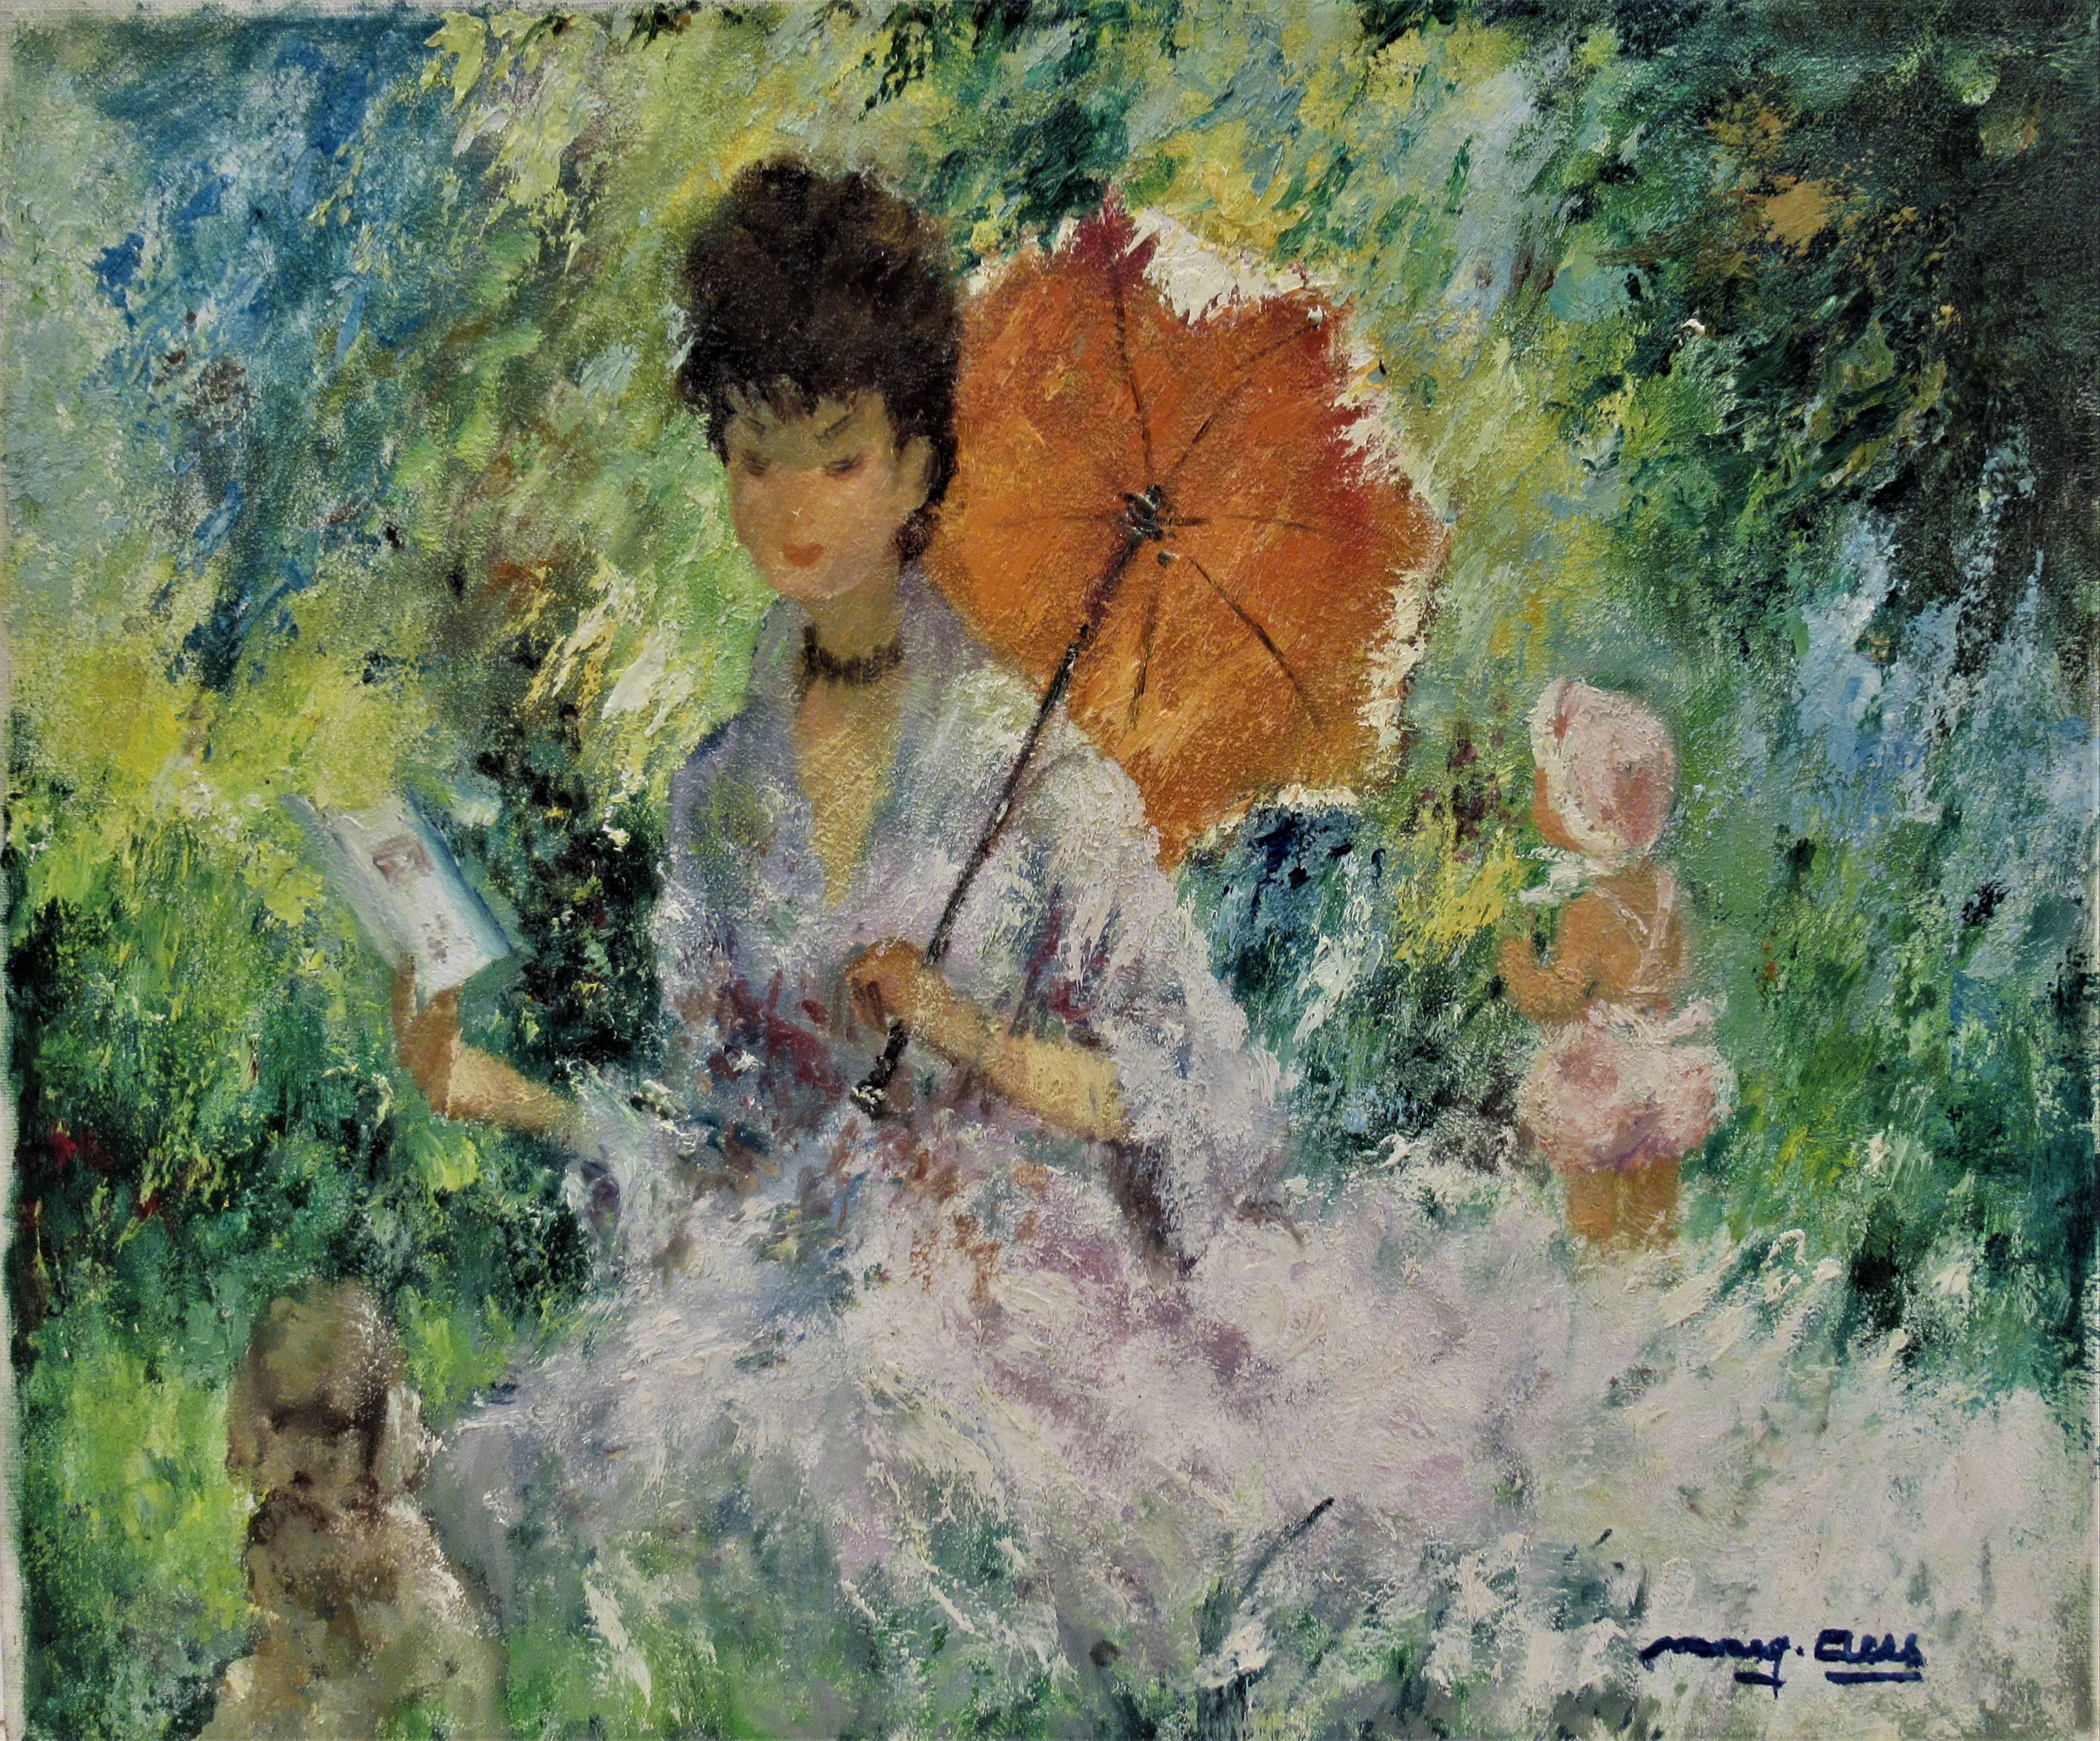 Femme avec Umbrella lisant un livre - Painting de Marguerite Aers